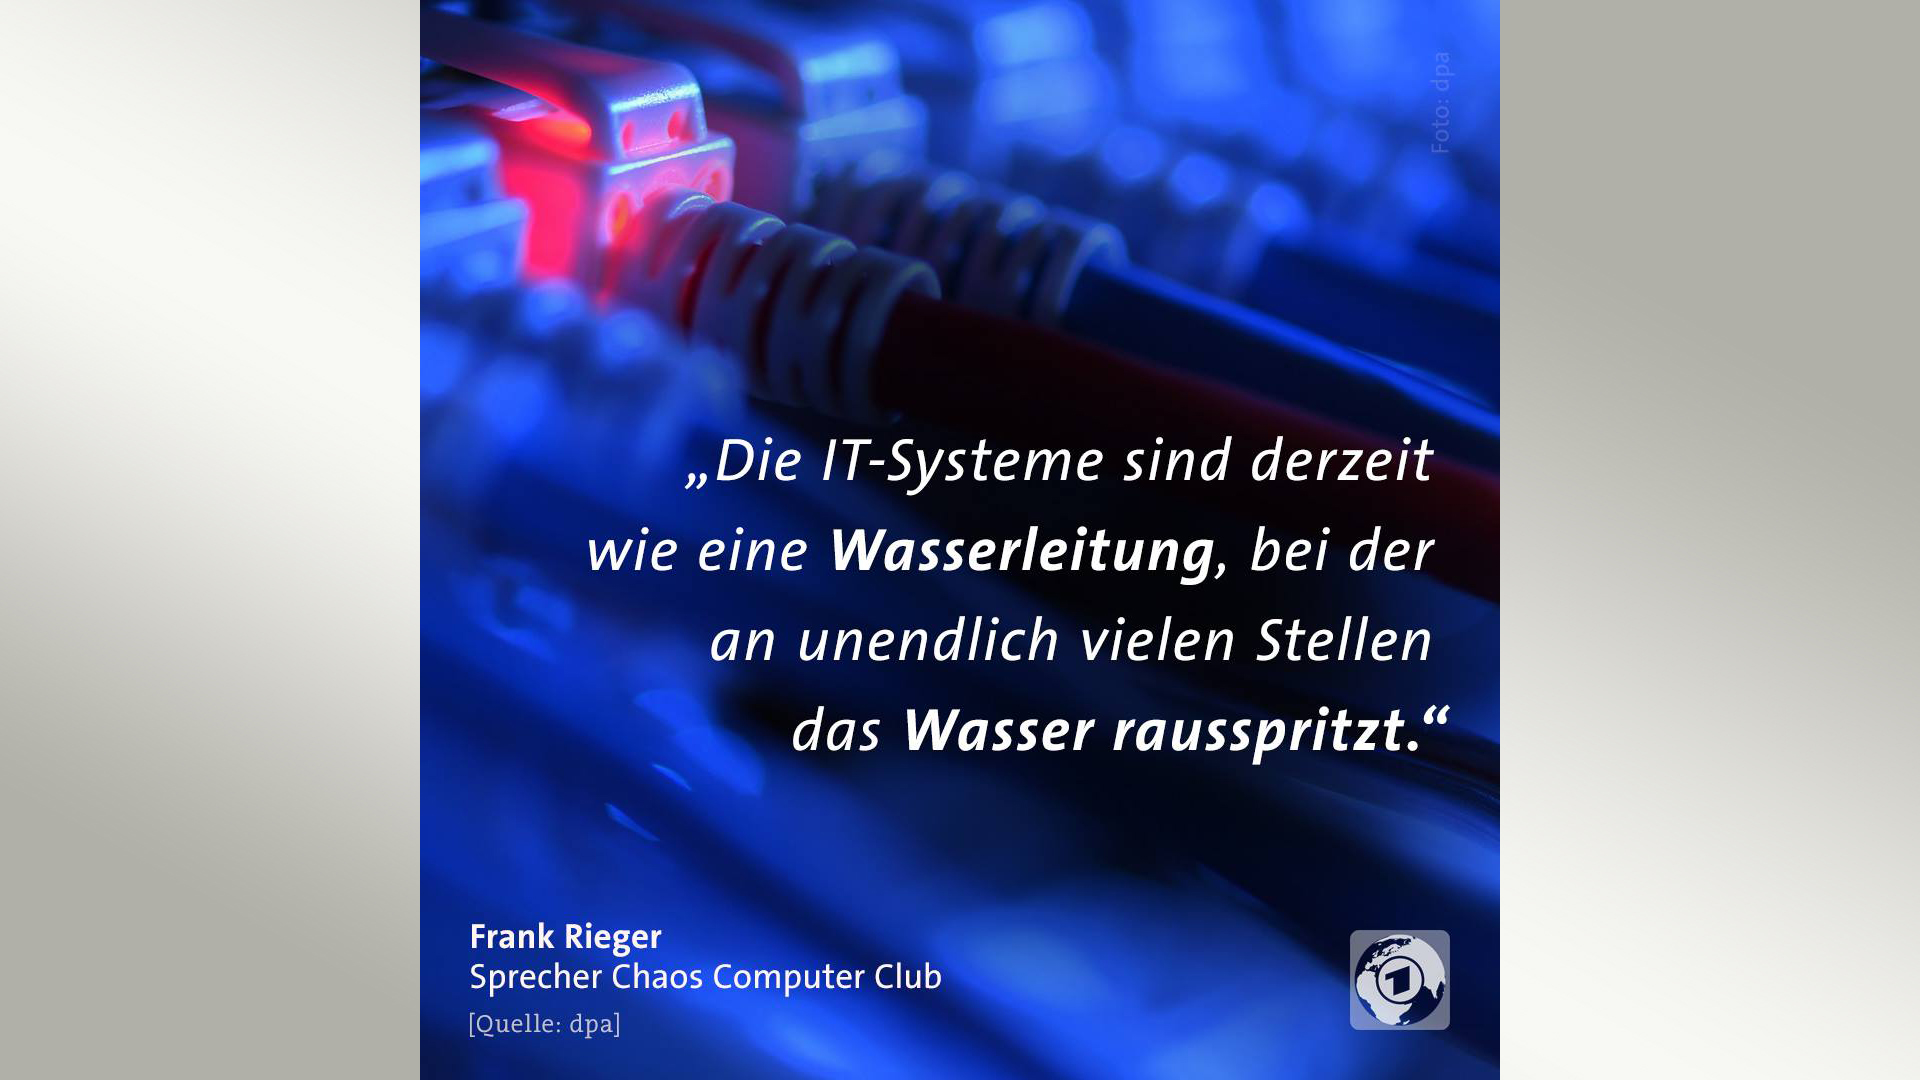 Zitat von Frank Rieger zu IT-Systemen | tagesschau/Facebook